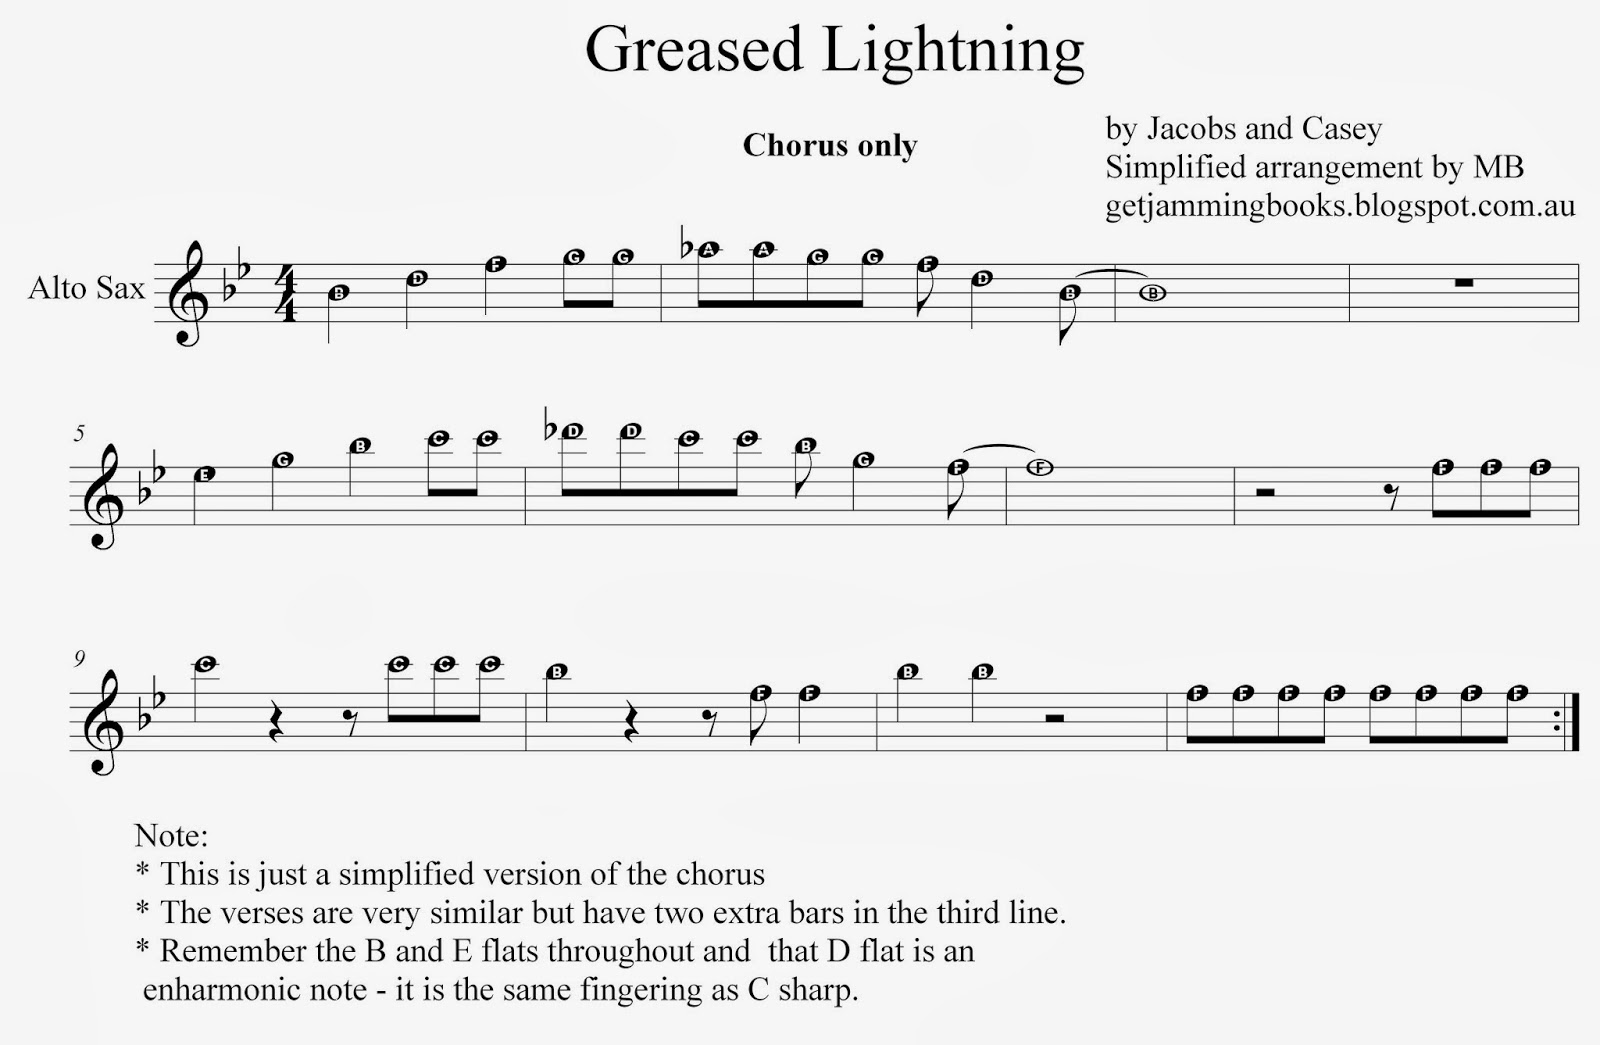 Lyrics for greased lightning